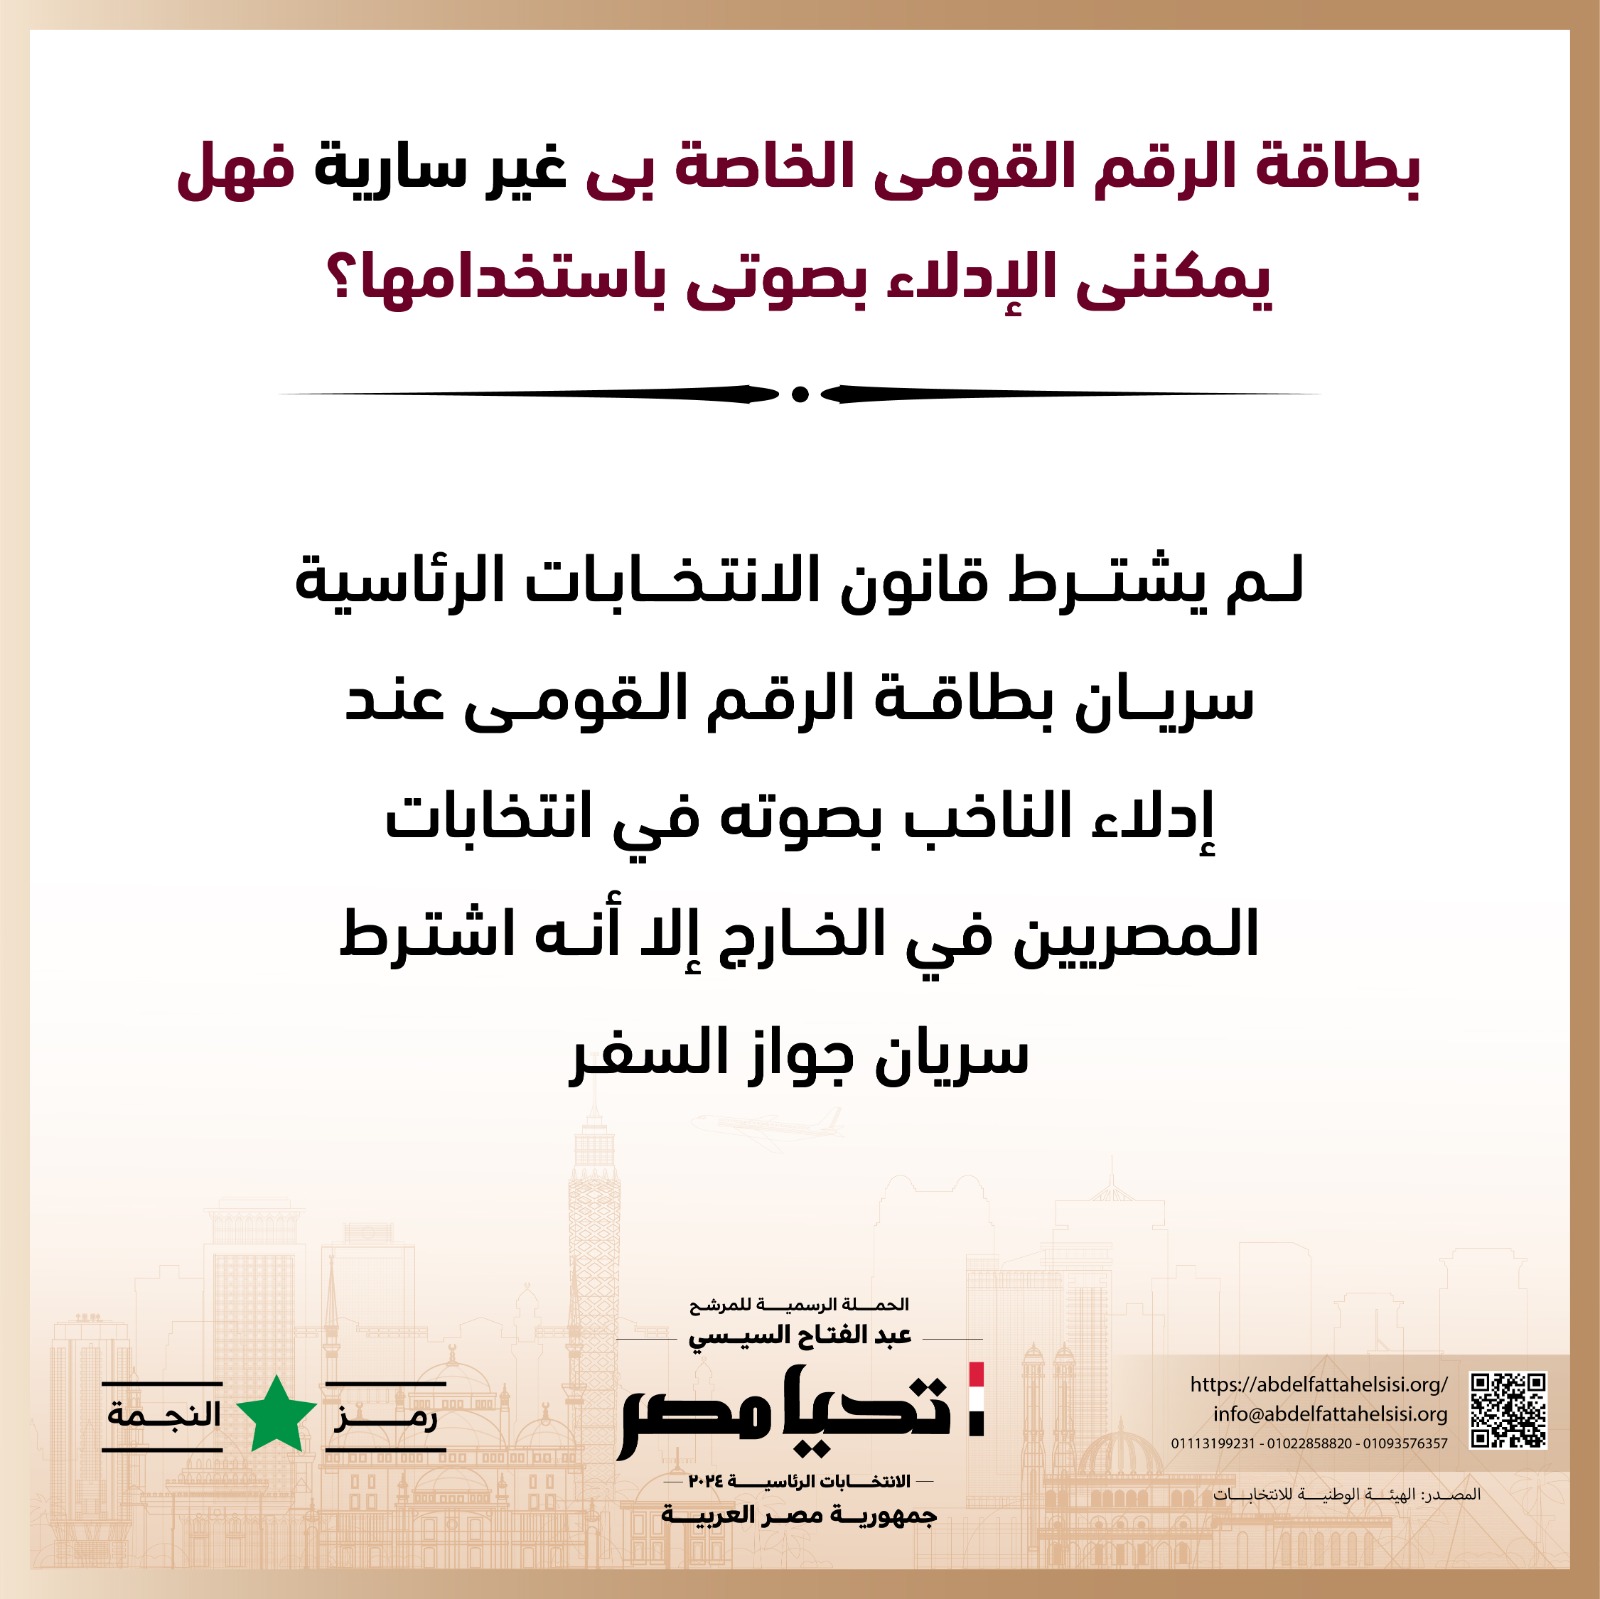 الحملة الرسمية للمرشح عبد الفتاح السيسي  (8)